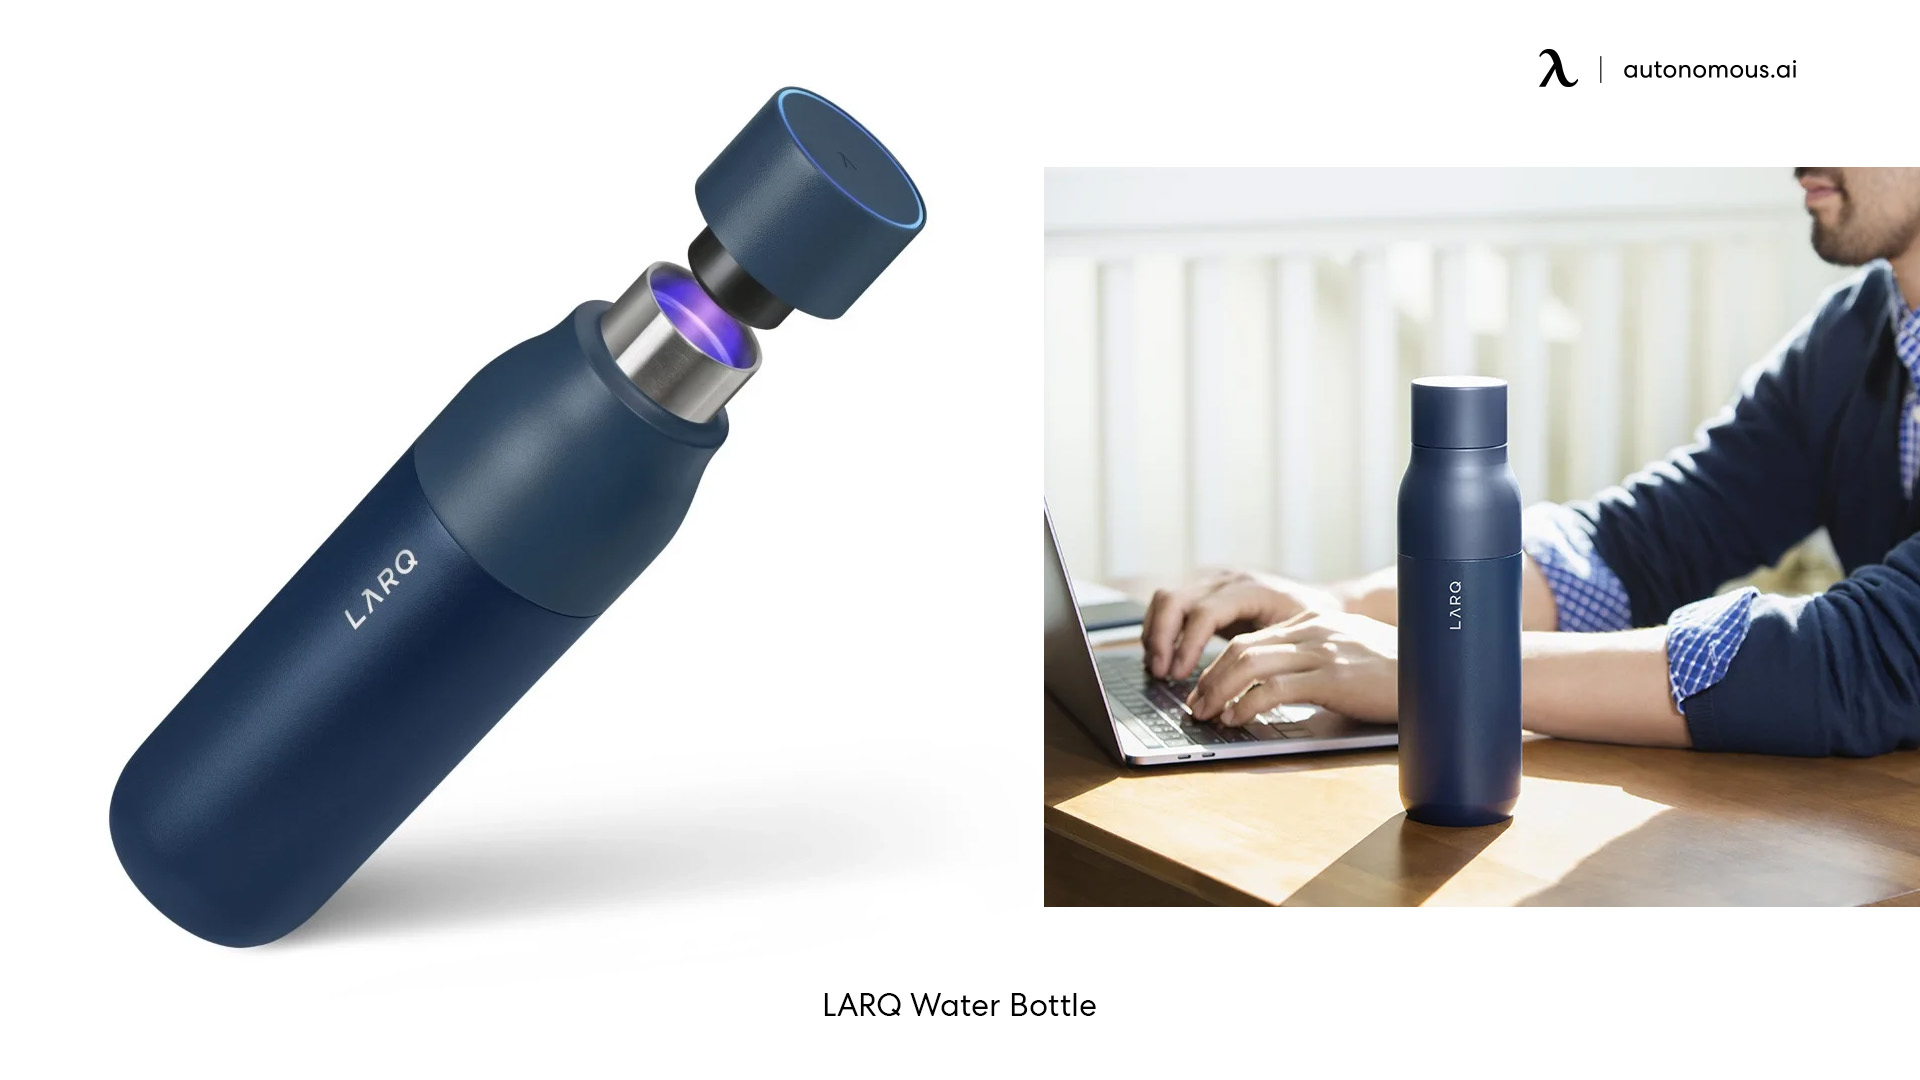 LARQ's Self-cleaning Water Bottle